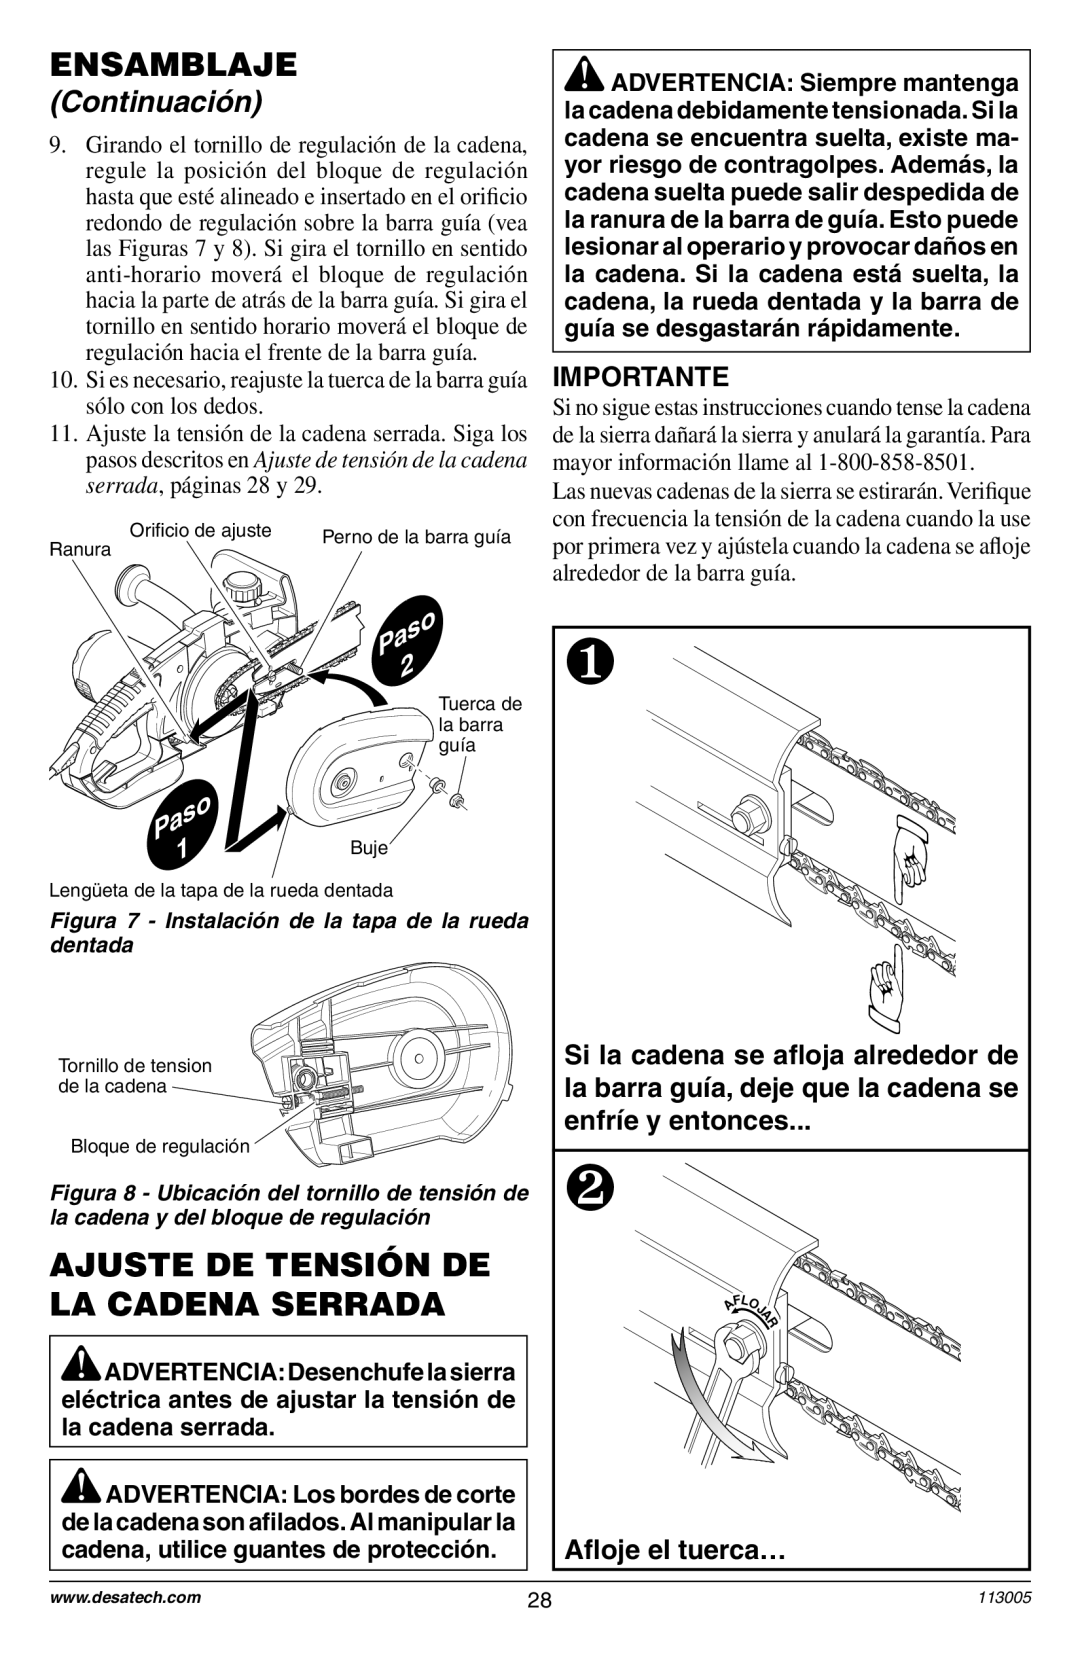 Remington Power Tools Electric Chain Saw Ajuste De Tensión De La Cadena Serrada, Importante, Aﬂoje el tuerca…, Ensamblaje 